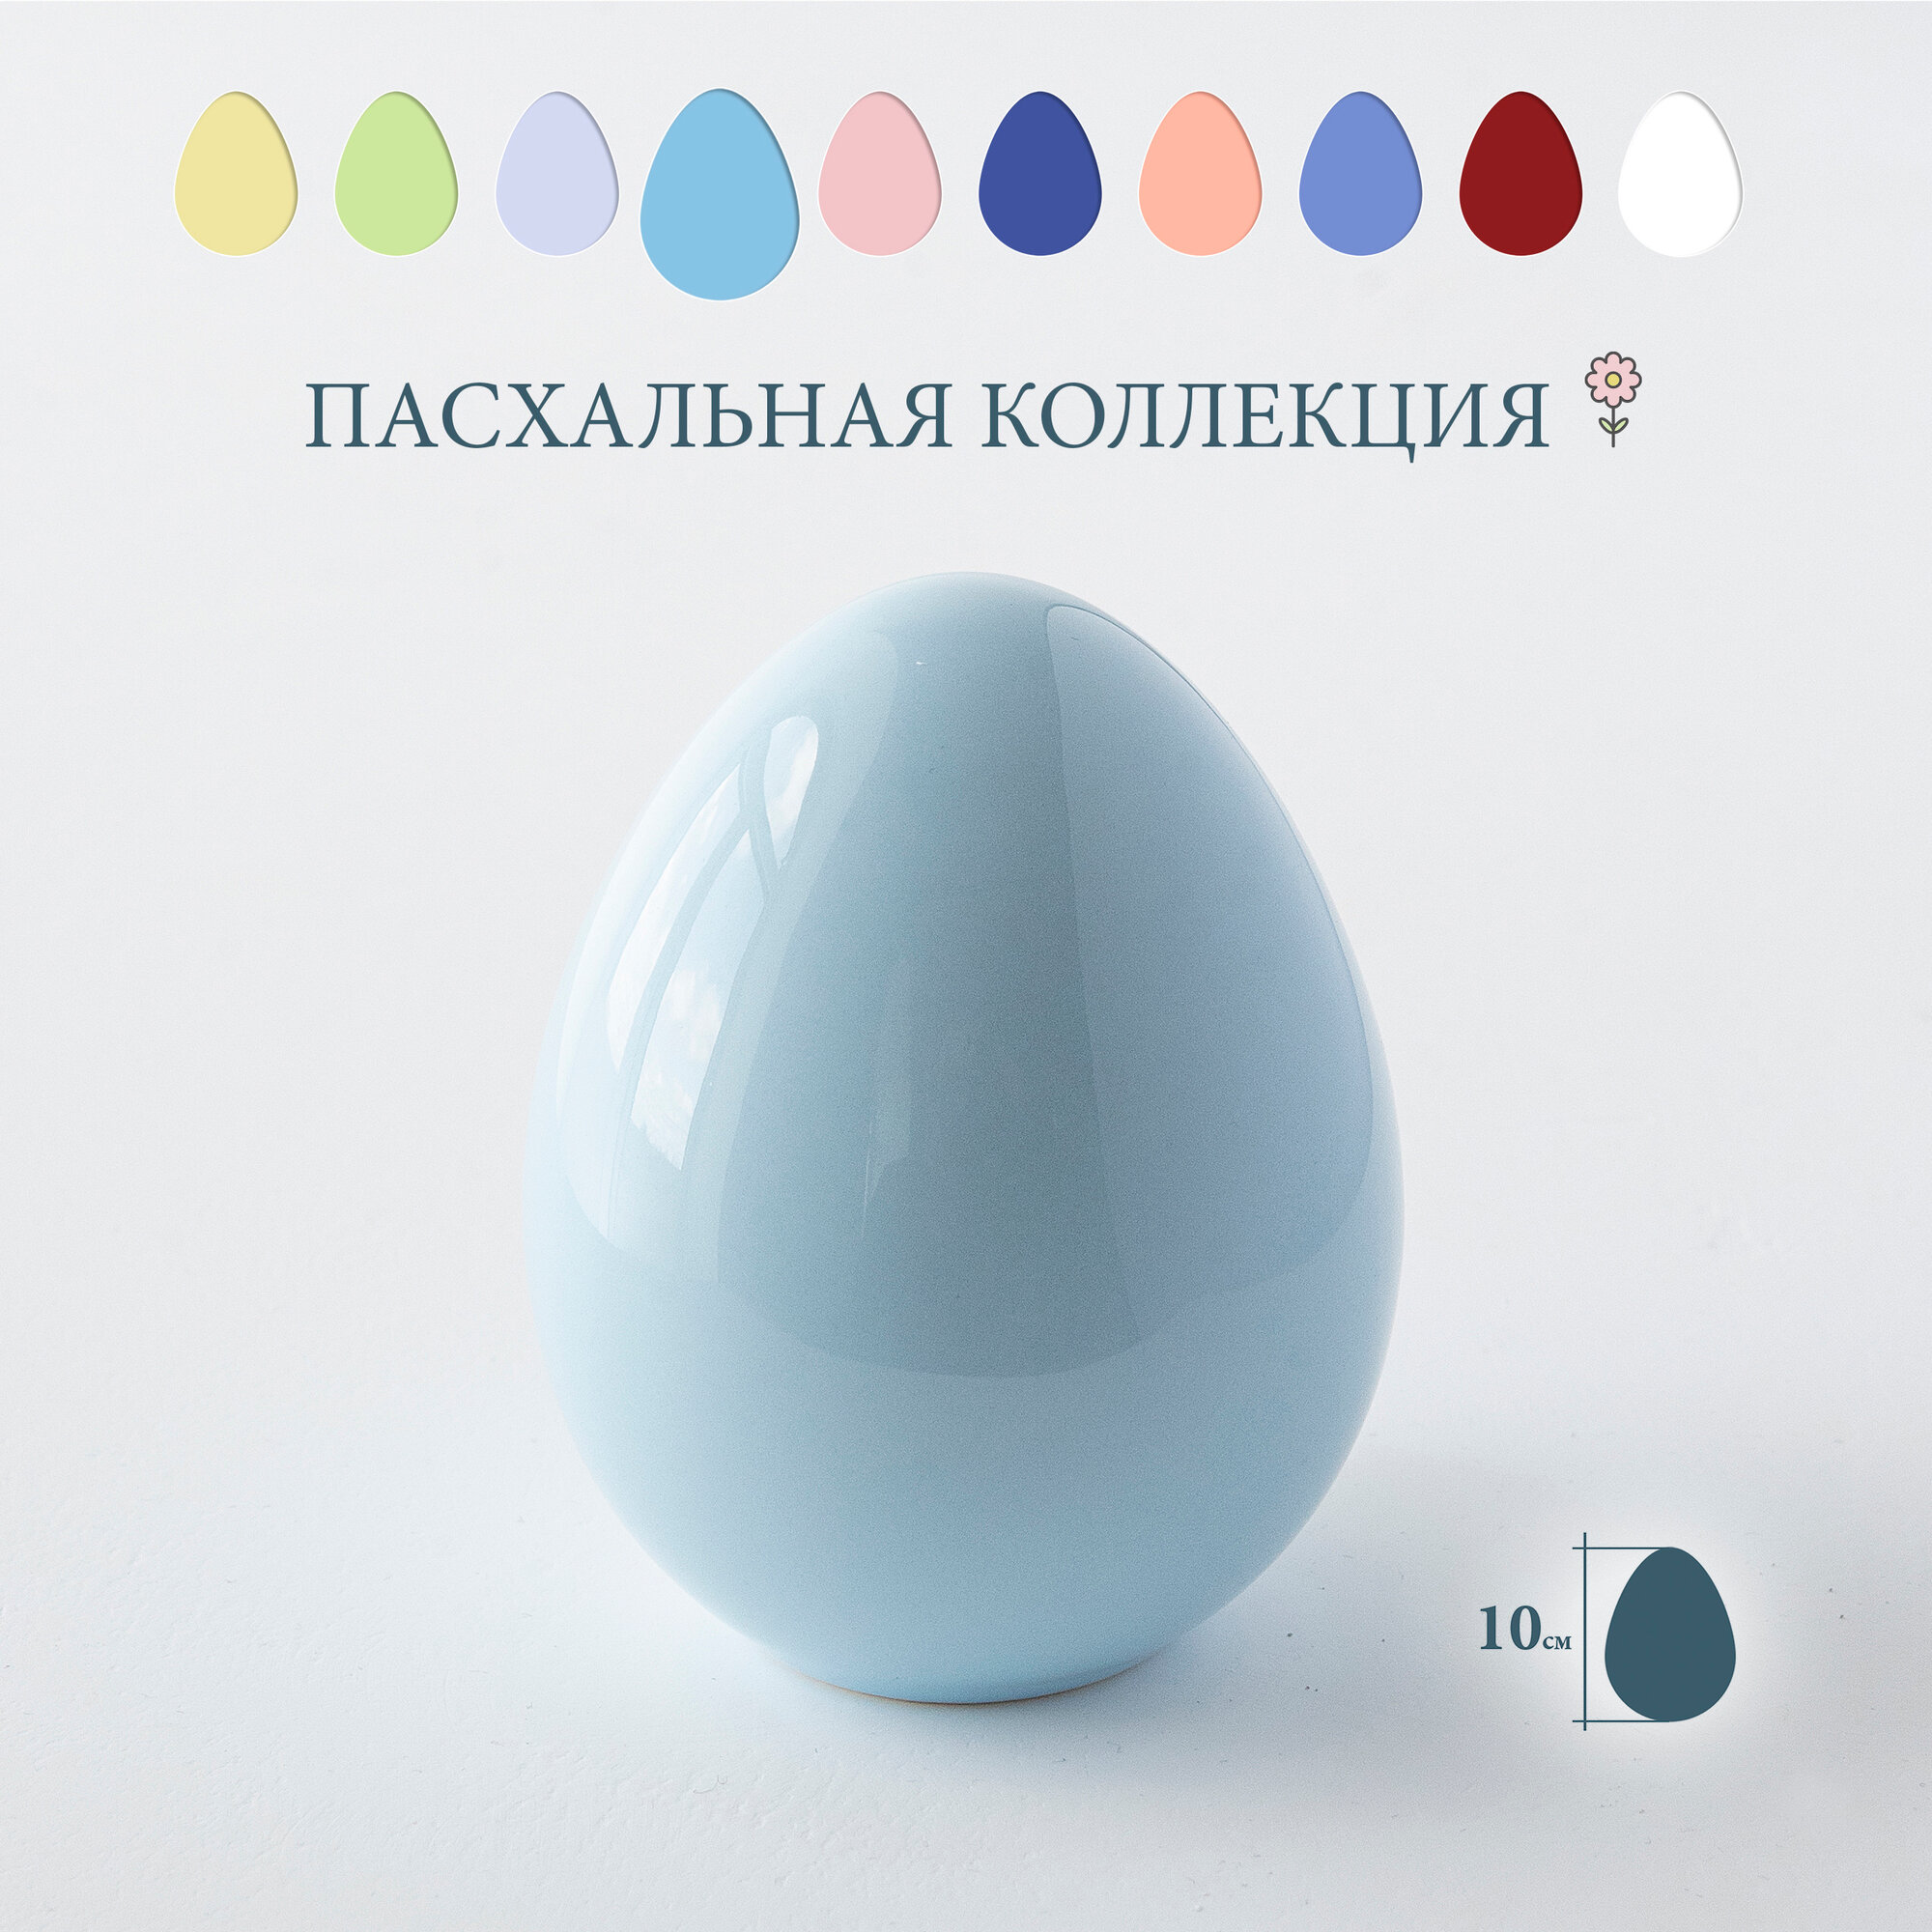 Яйцо пасхальное "Egg Small", голубое, высота 10 см